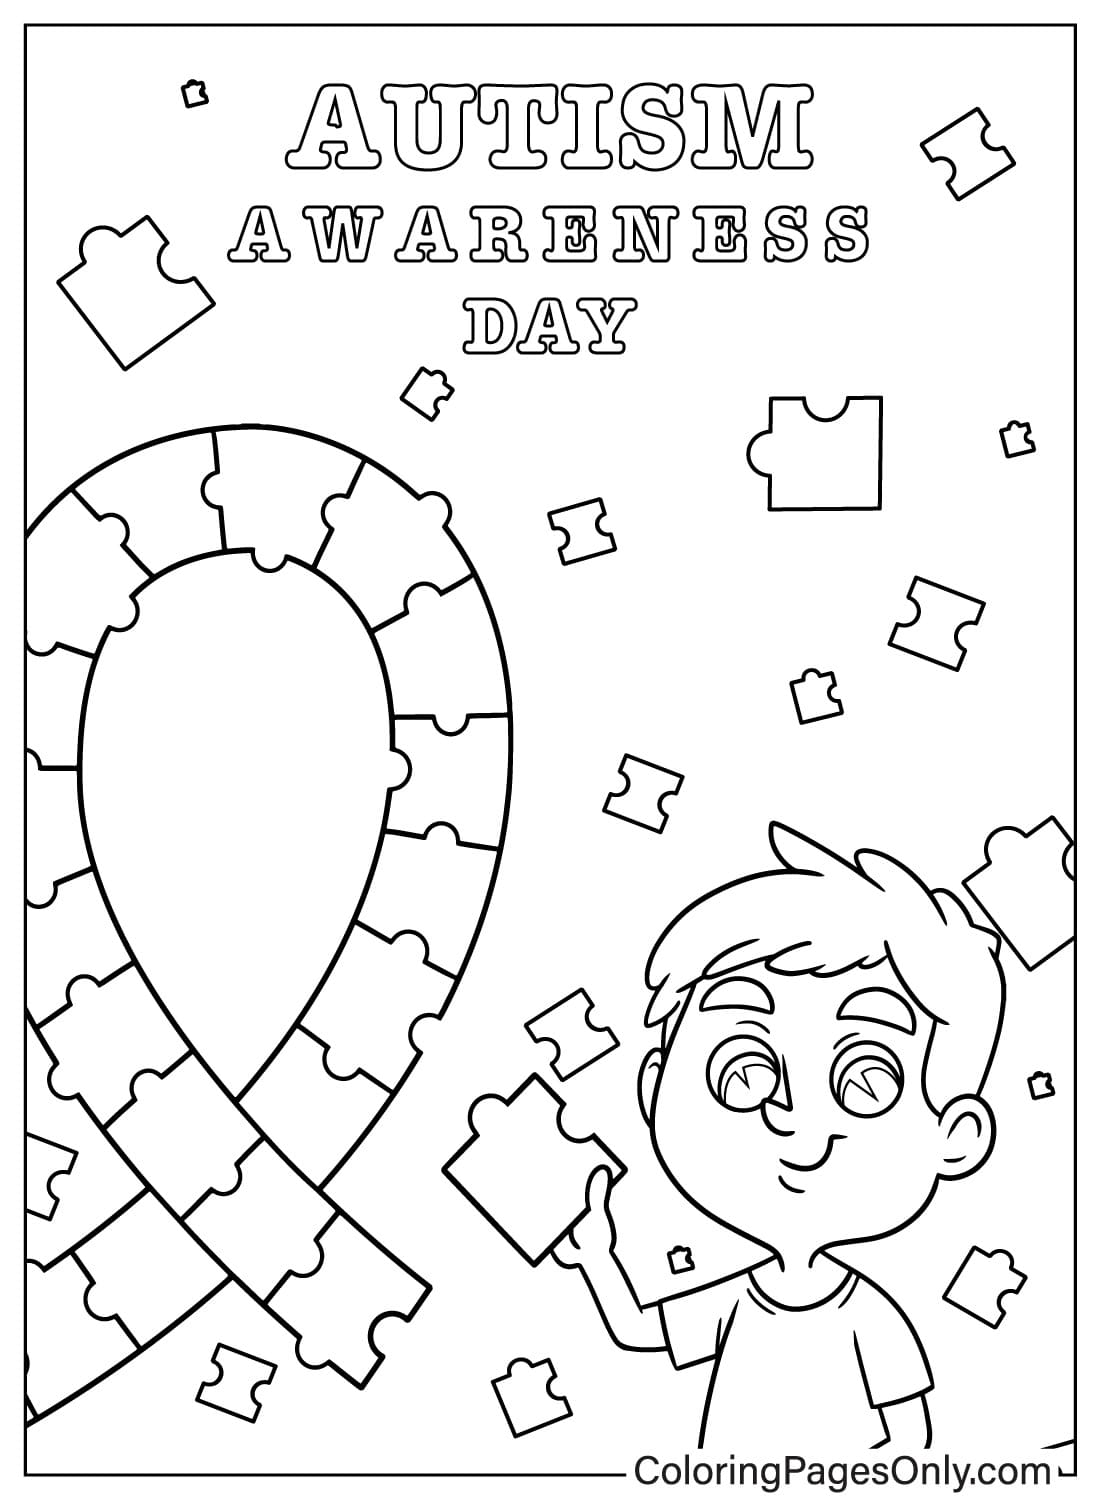 Página para colorear de concientización sobre el autismo para niños en edad preescolar del Día Mundial de Concientización sobre el Autismo